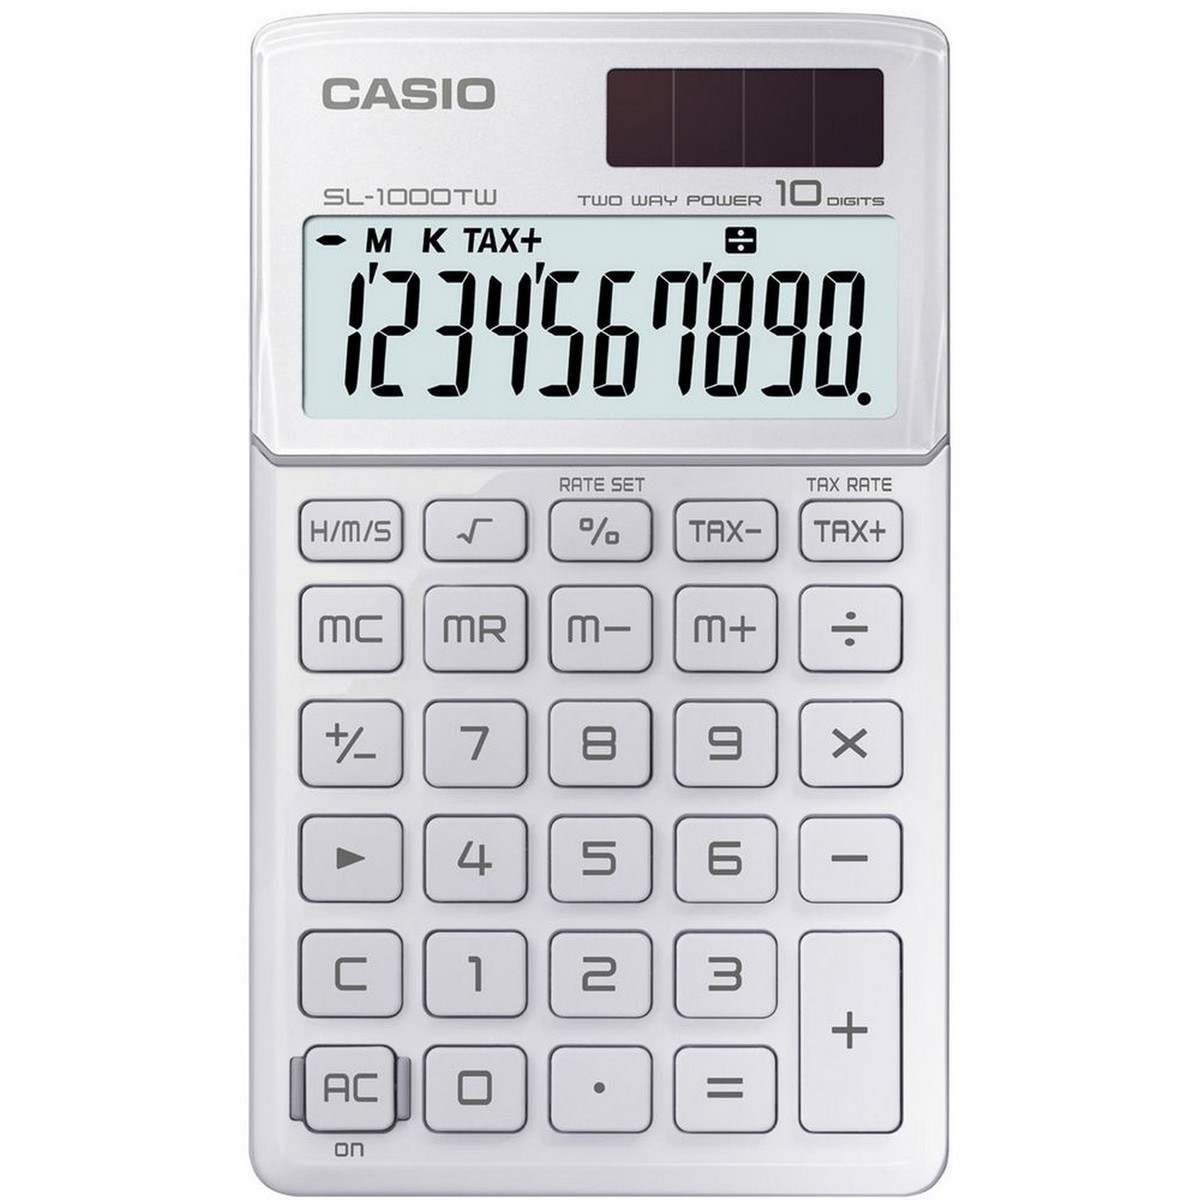 Casio Calculator SL-1000 TW